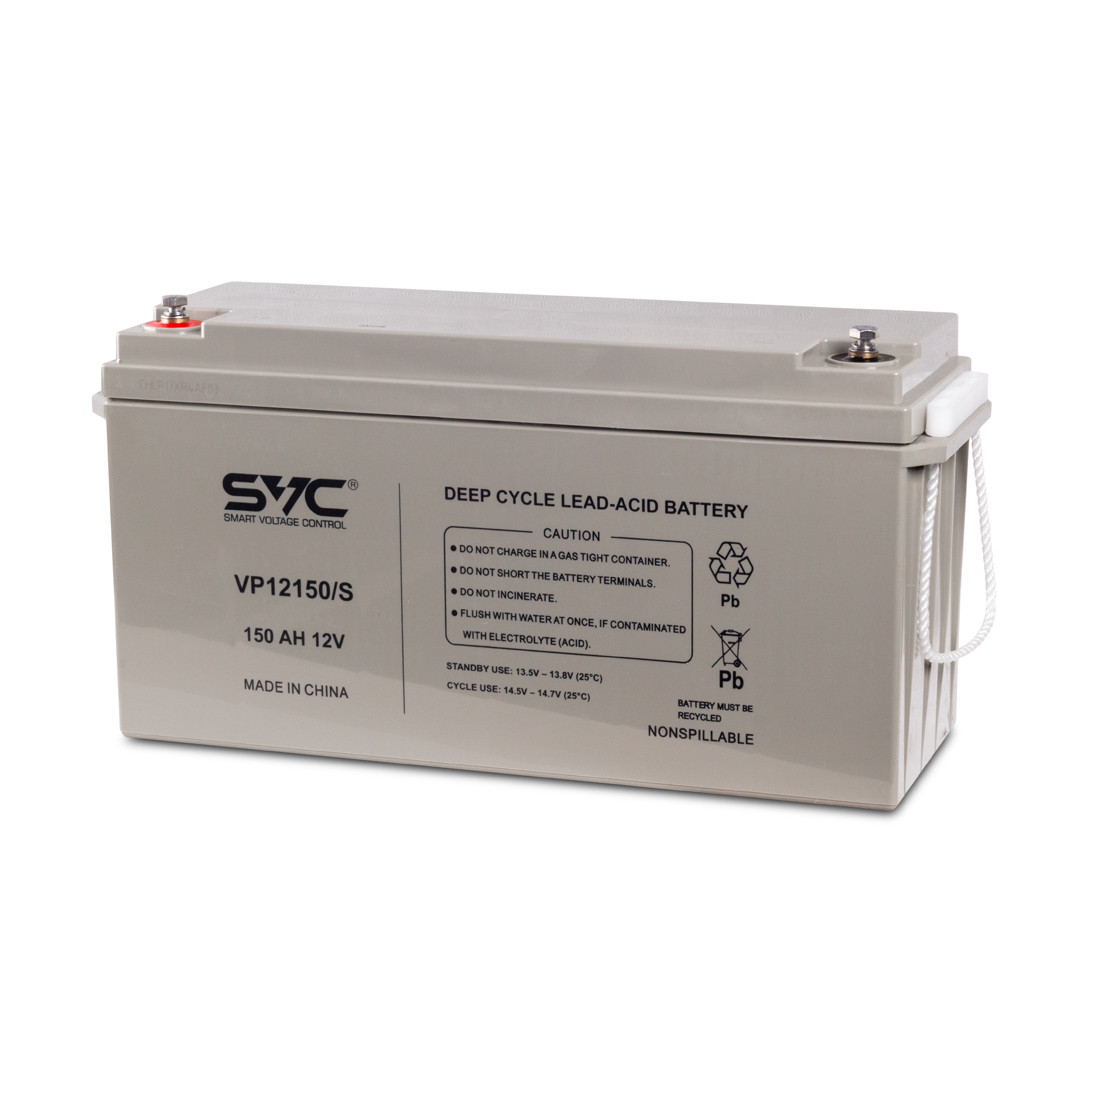 SVC VP12150/S Батарея Свинцово-кислотная 12В 150 Ач Размер в мм.: 485*172*242, фото 1